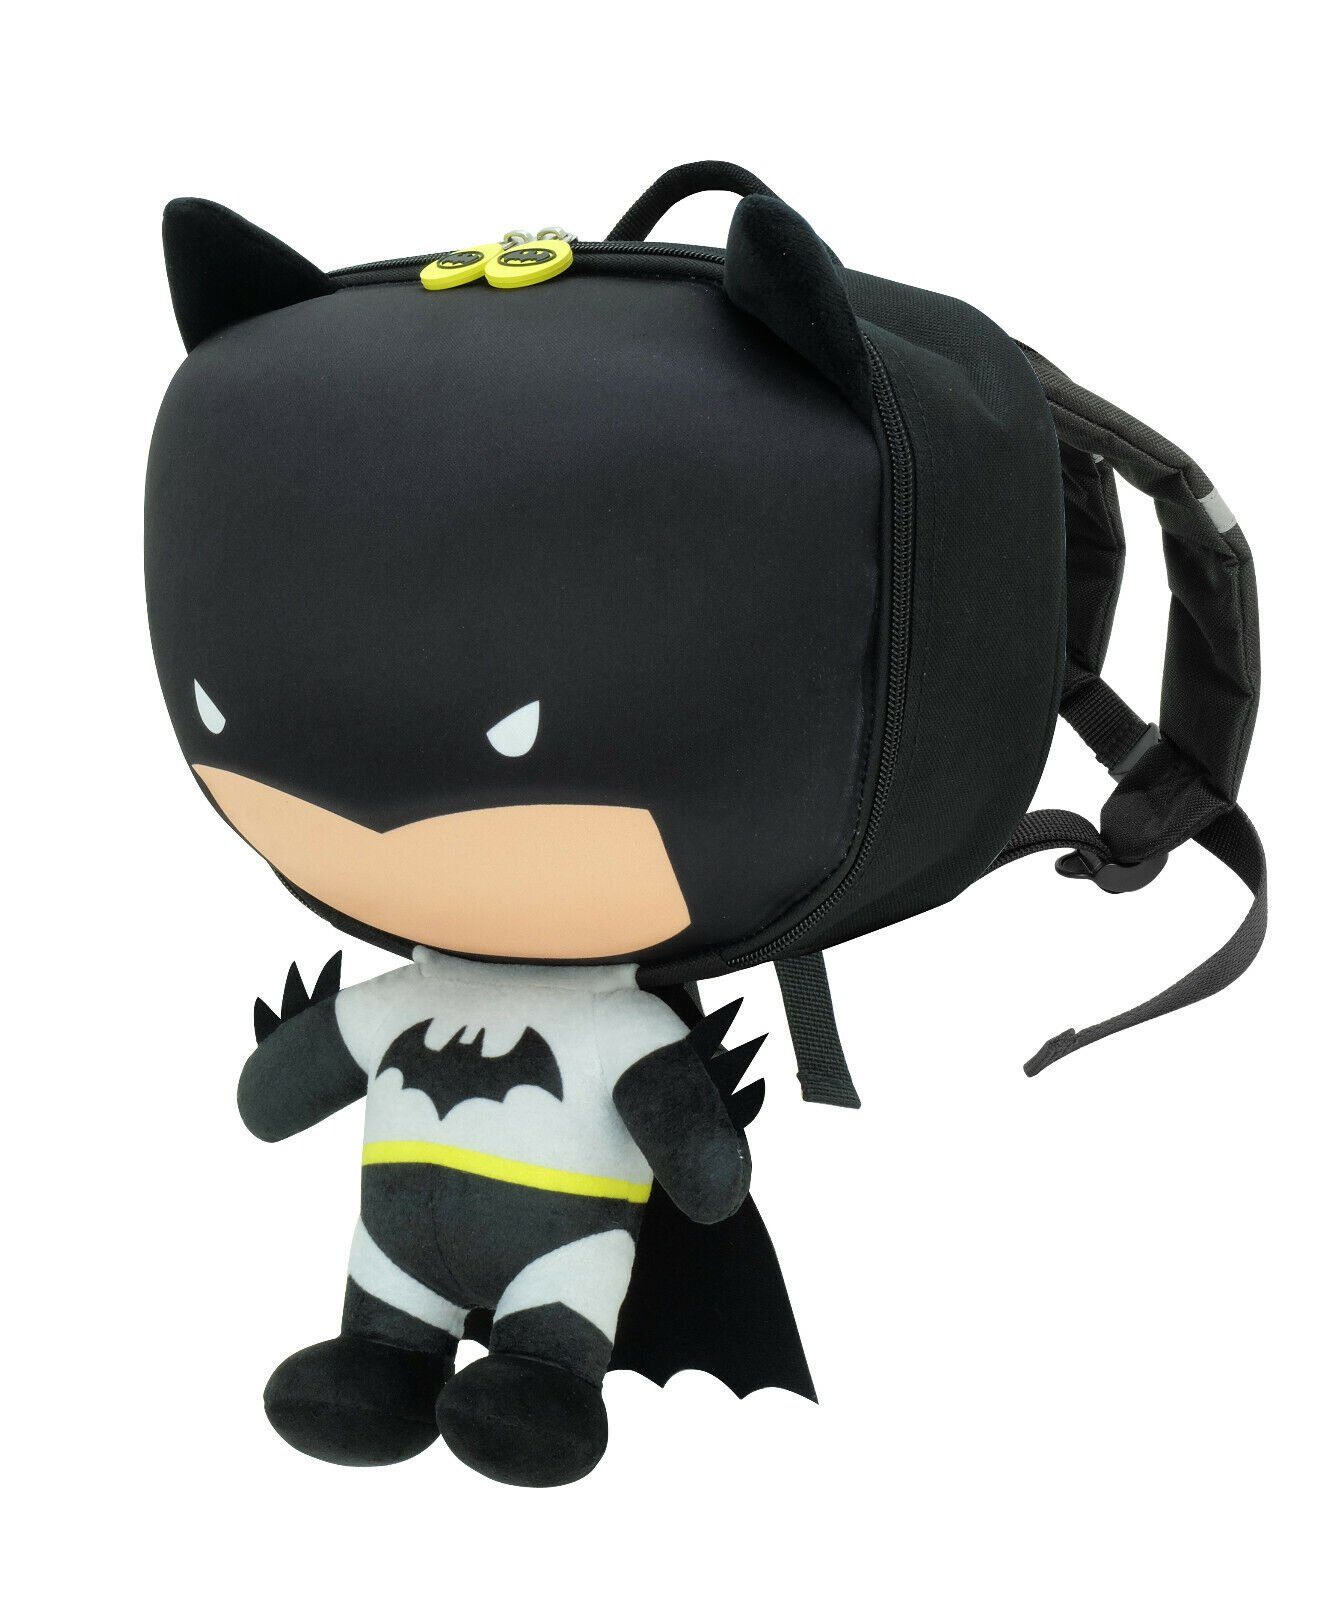 soma Kinderrucksack Batman 3D Rucksack für Kinder 40cm DC Comics Rucksack Tasche, Schwarz, 5 Liter Fassungsvermögen & verstellbare Schultergurte